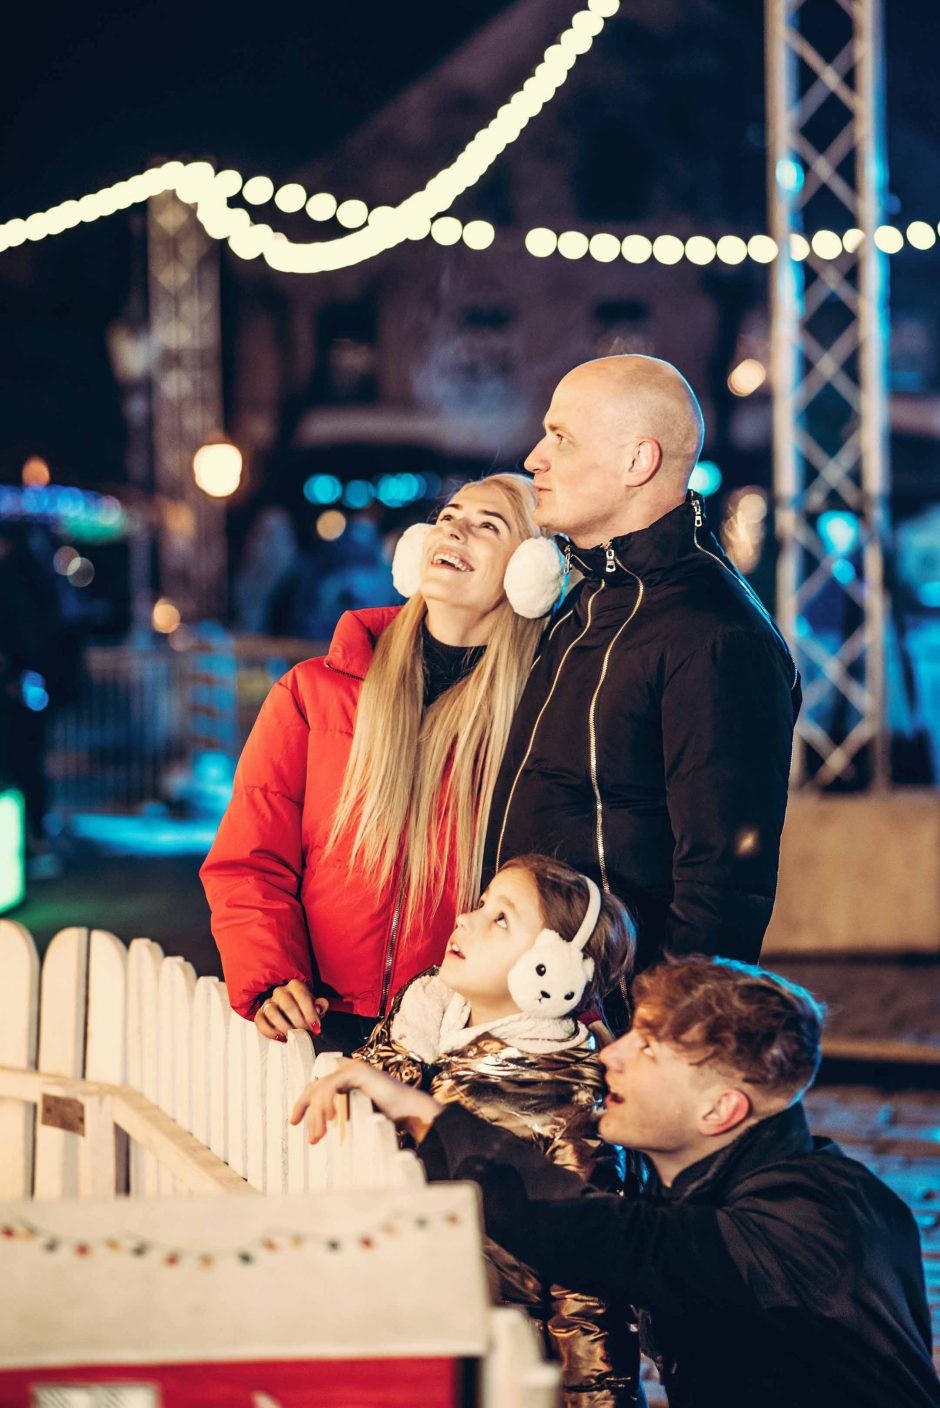 Klaipėdiečio kalėdine staigmena šeimai gali pasigrožėti visa Lietuva